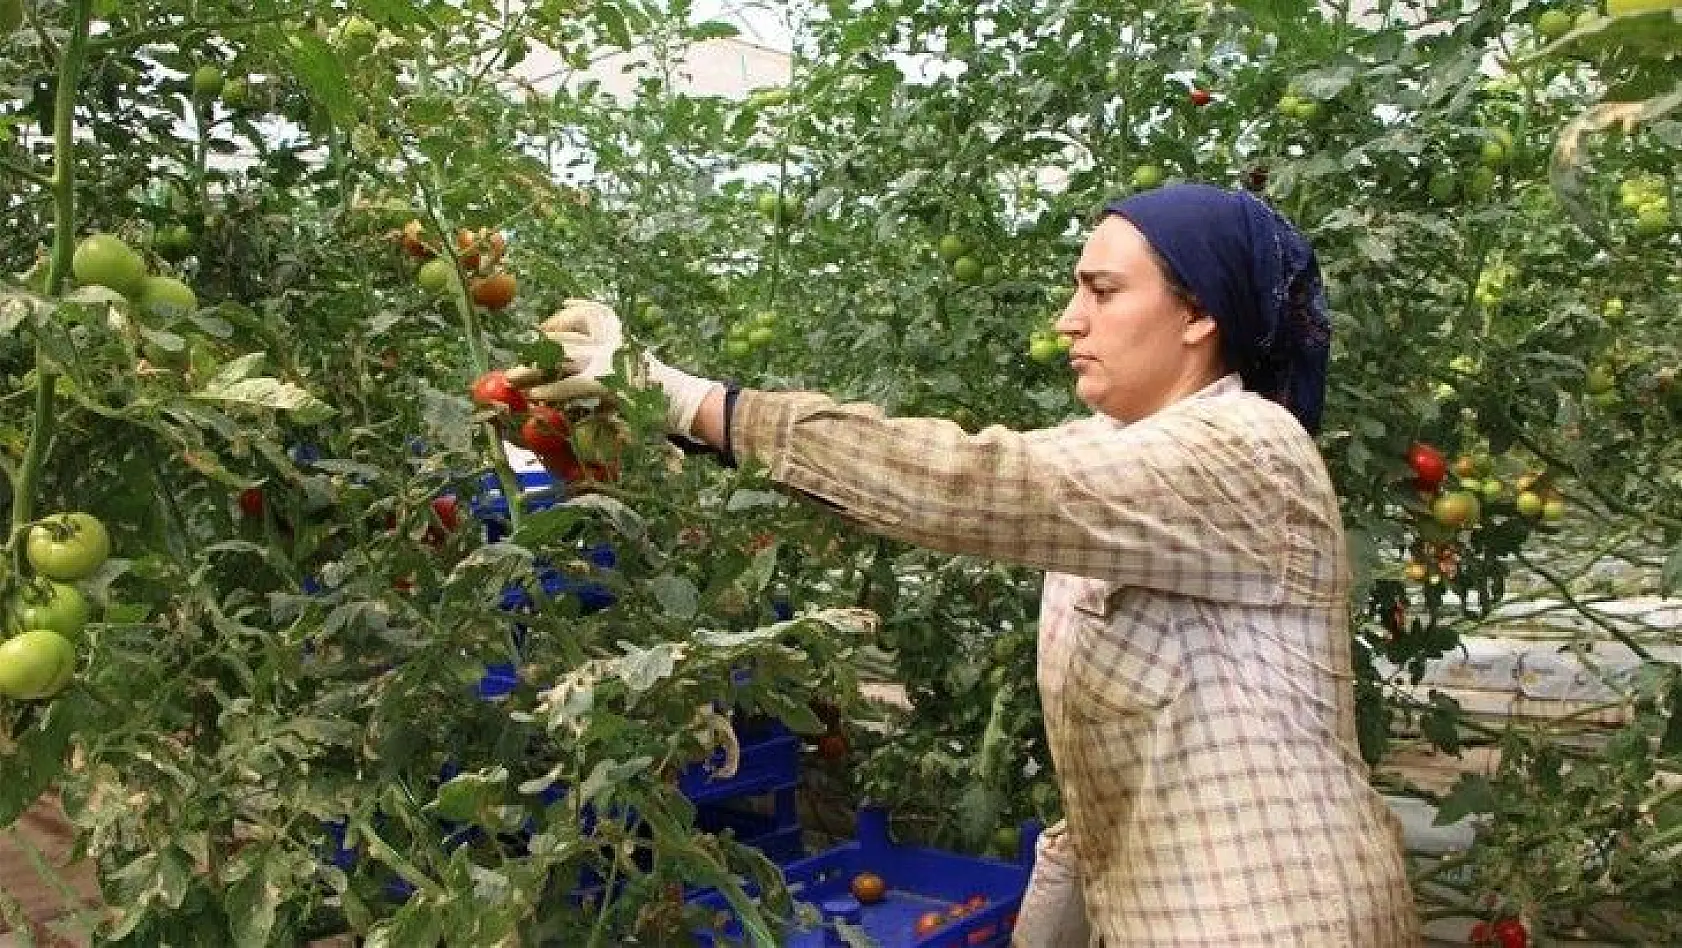 Topraksız tarım hem kadınlara iş kapısı oldu, hem de yılın 10 ayında üretim yapılmaya başlandı